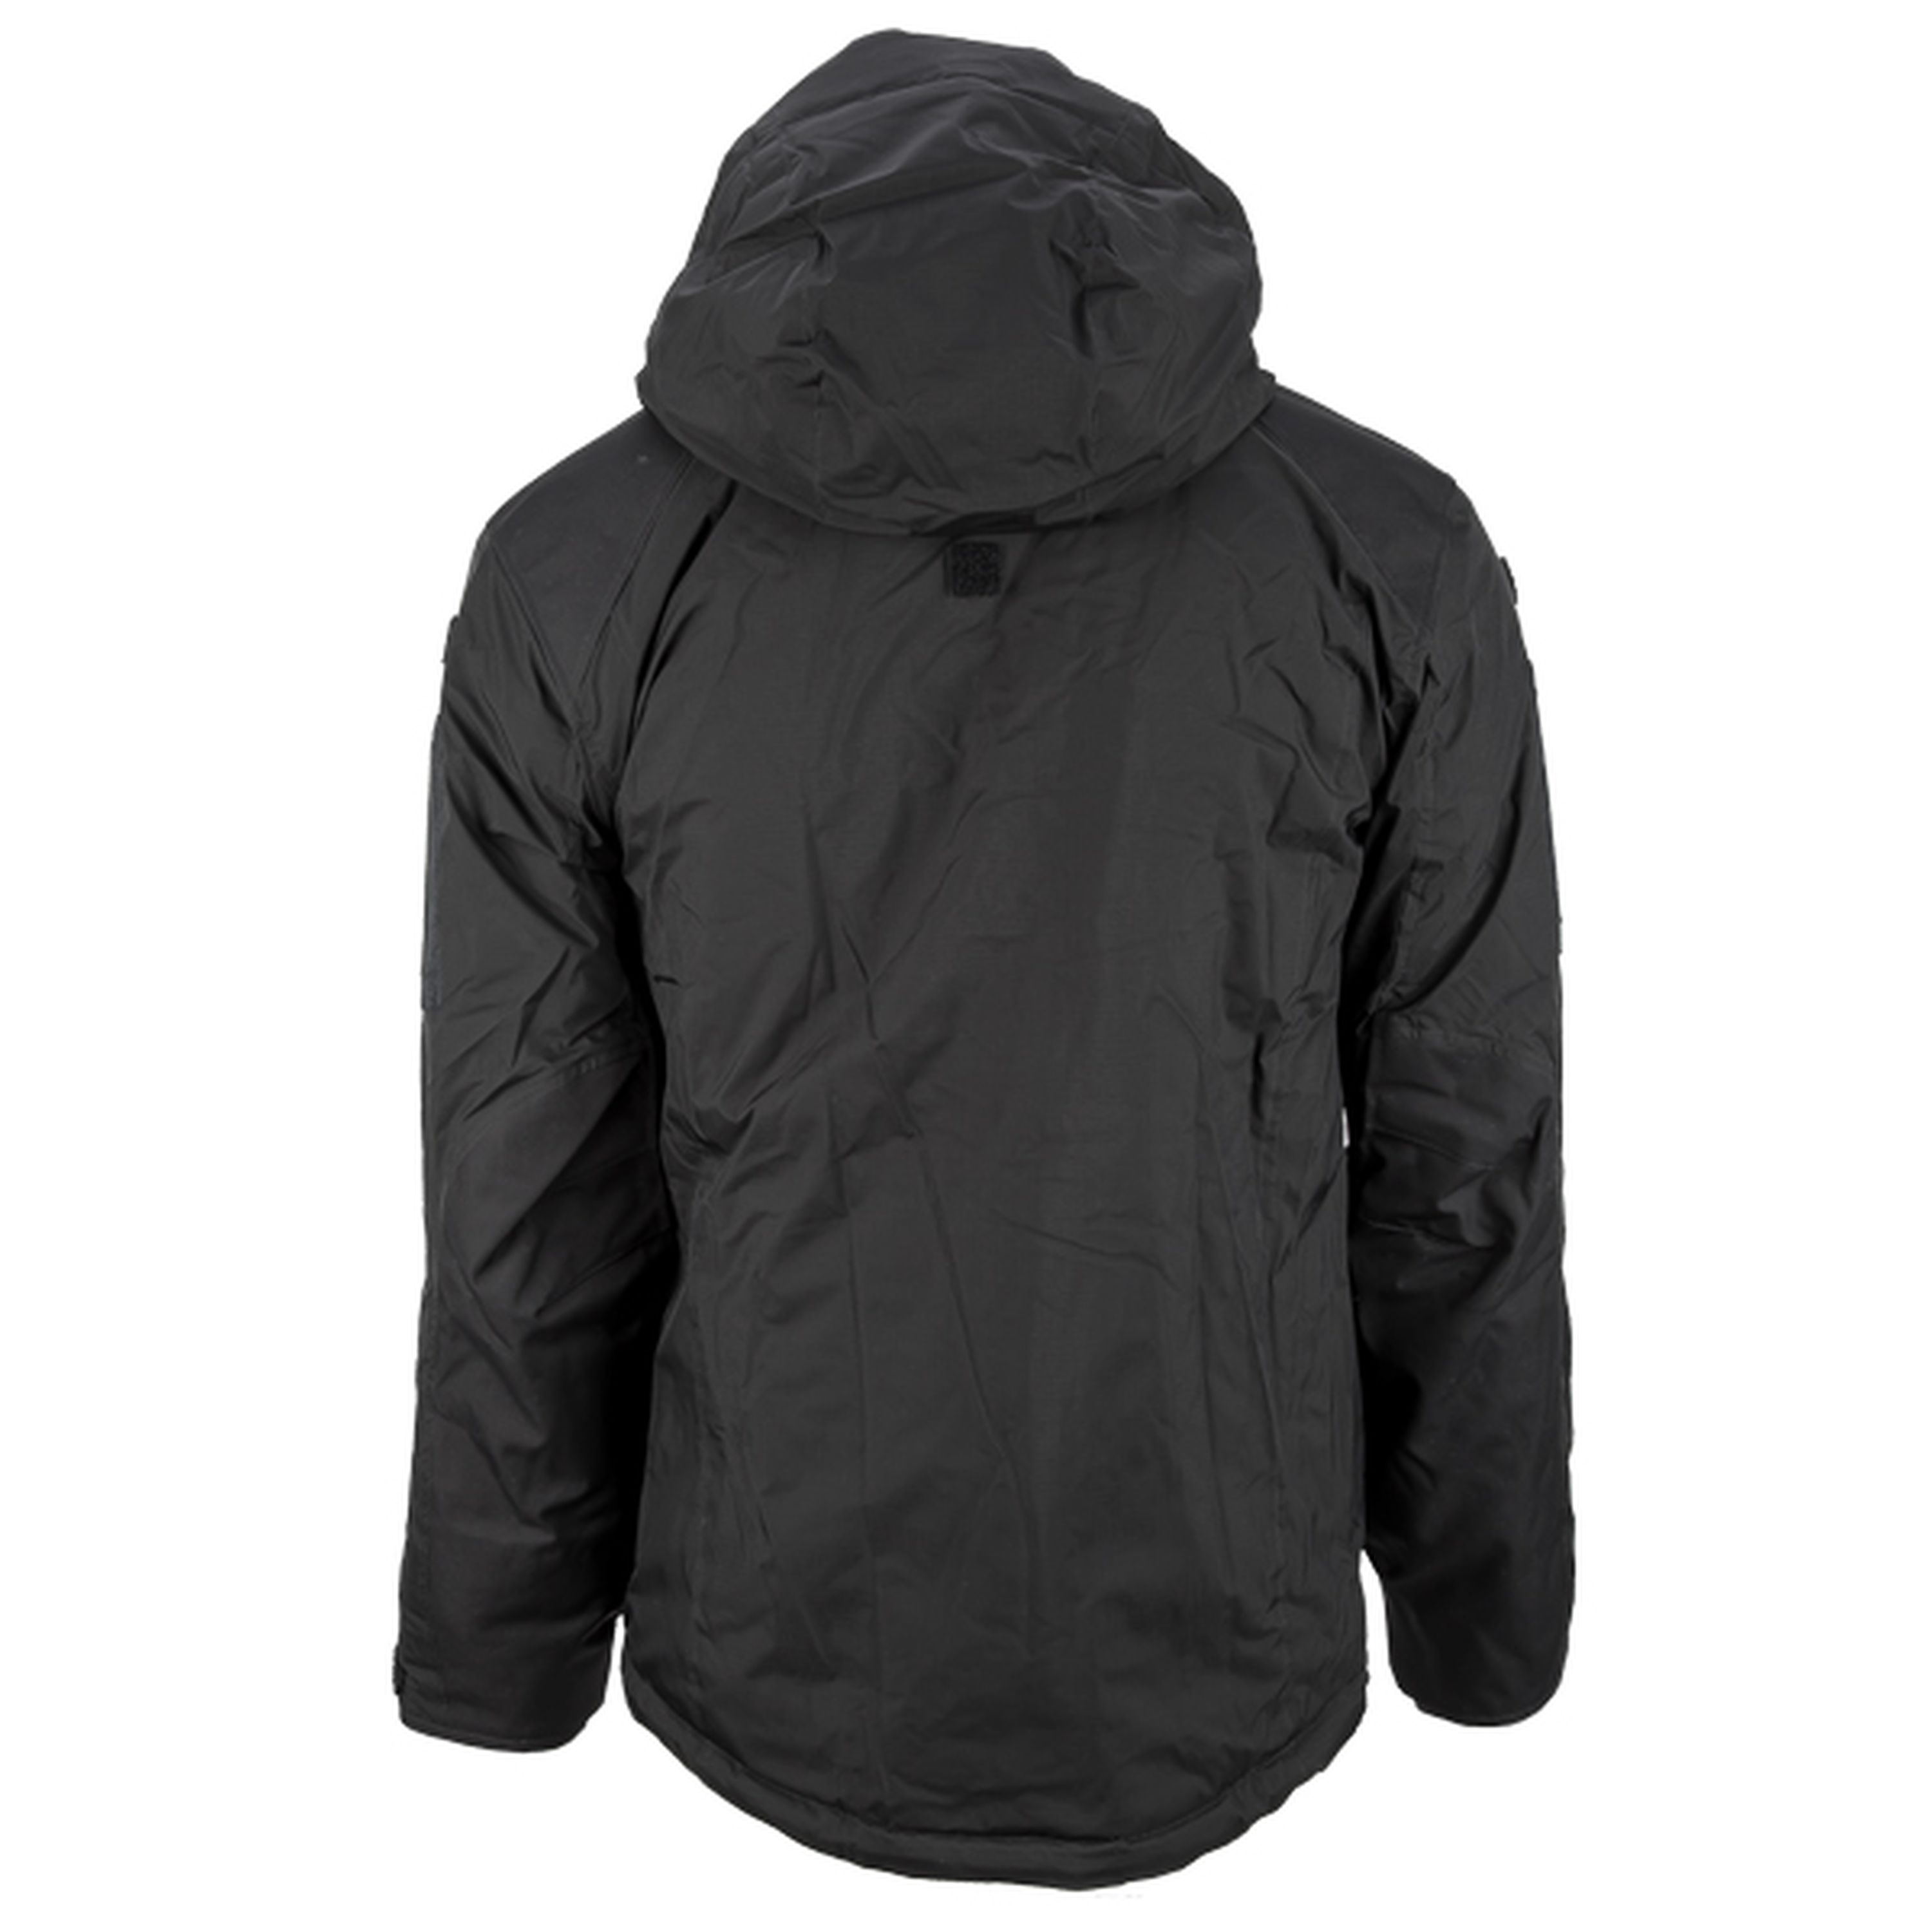 Carinthia Jacket MIG 4.0 black | Carinthia Jacket MIG 4.0 black ...